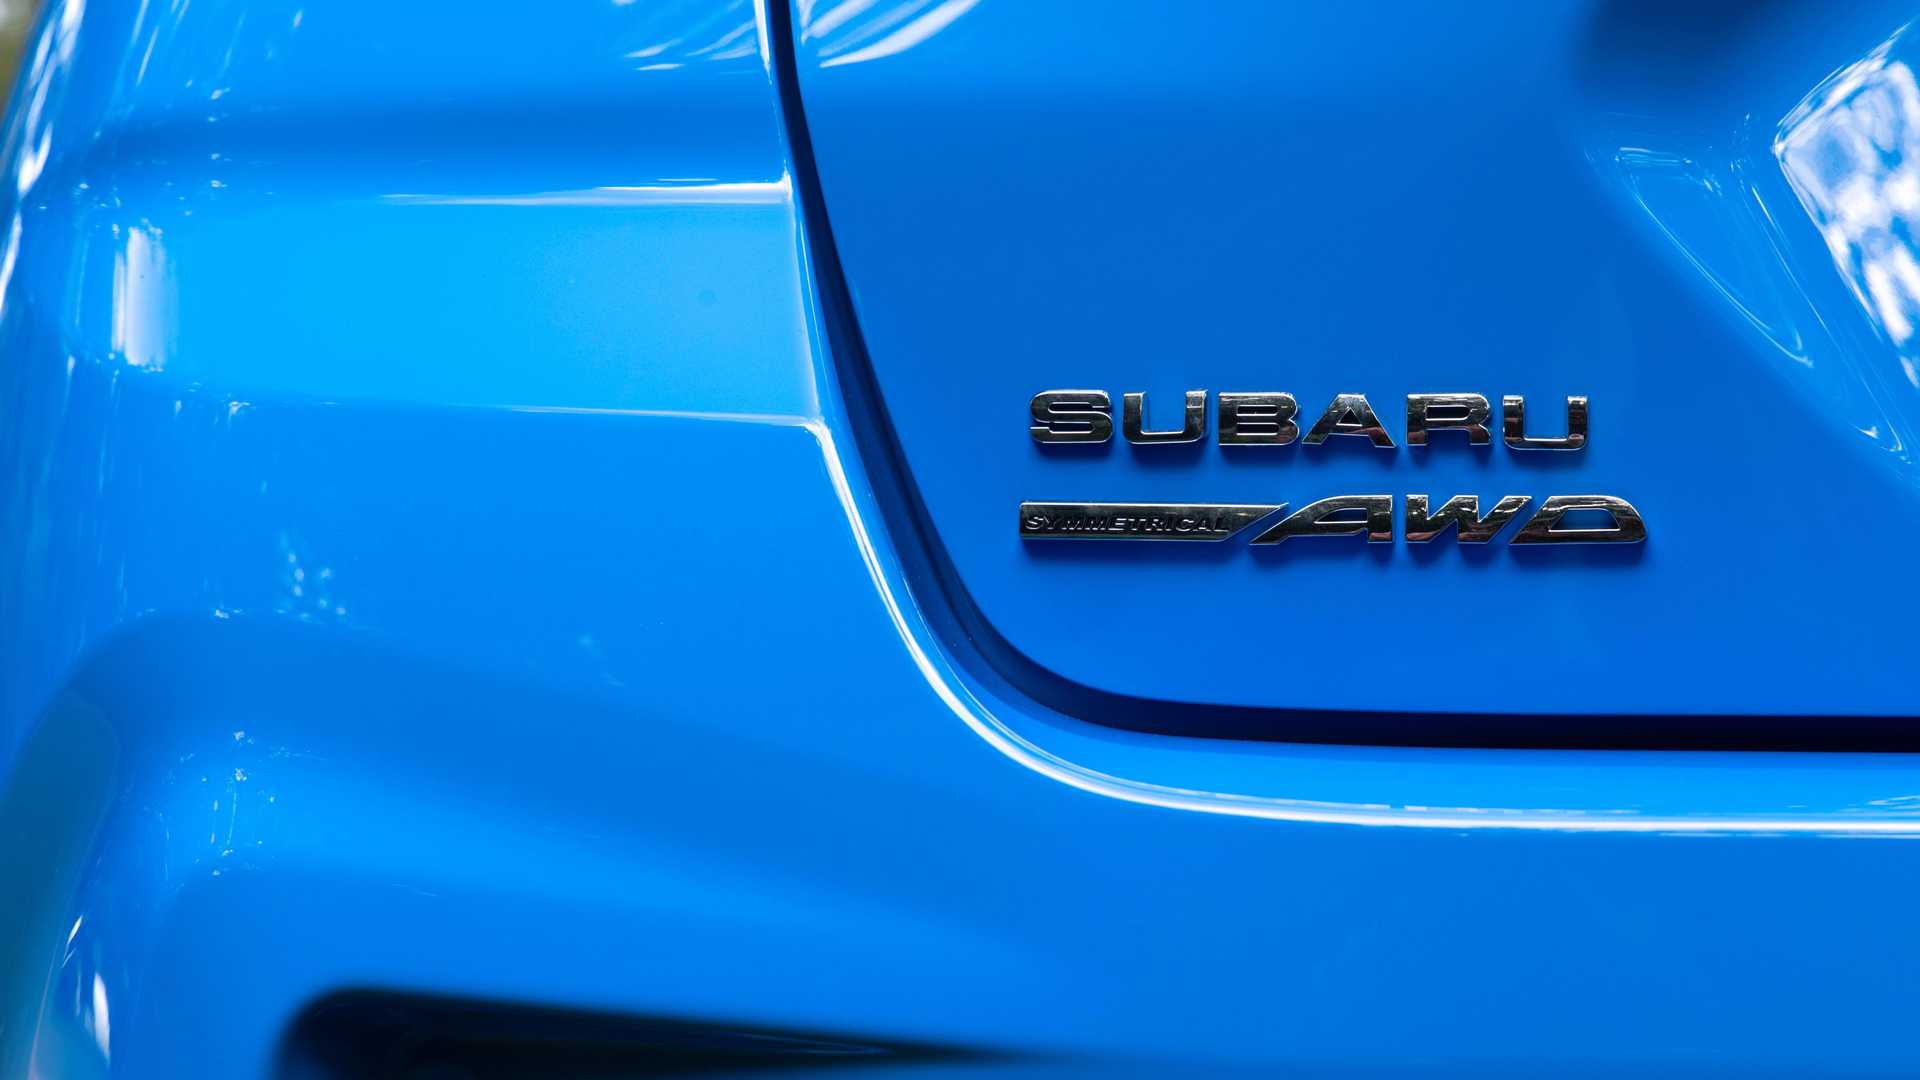 Yeni Subaru Impreza, 182 beygirlik RS versiyonuyla tanıtıldı